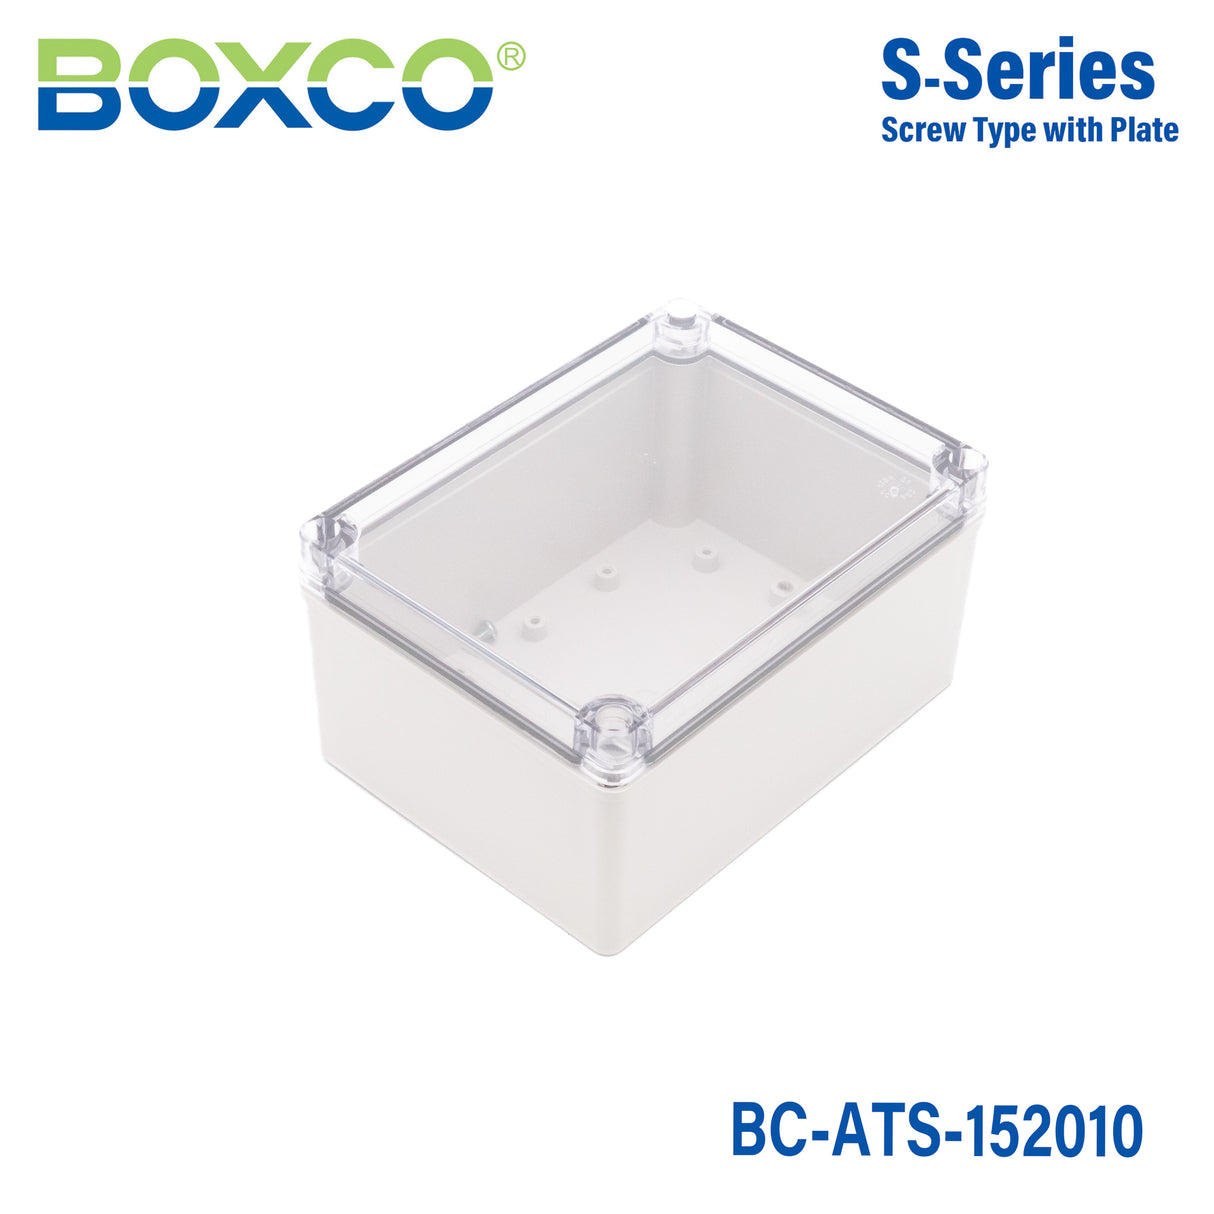 Boxco S-Series 150x200x100mm Plastic Enclosure, IP67, IK08, ABS, Transparent Cover, Screw Type